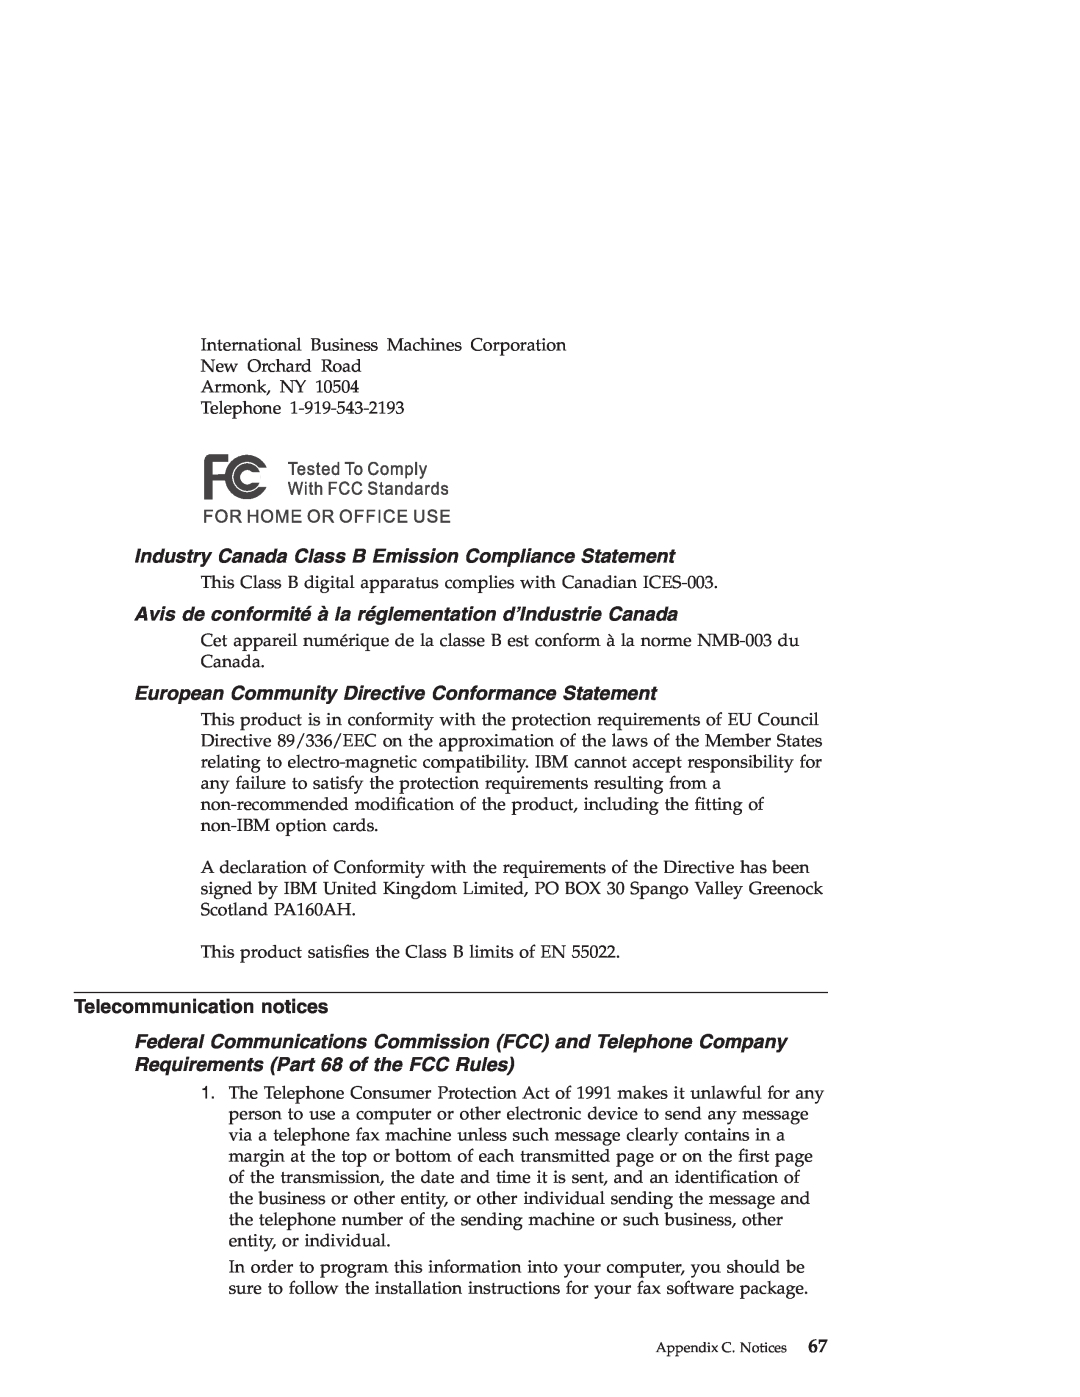 IBM R30 Industry Canada Class B Emission Compliance Statement, Avis de conformité à la réglementation d’Industrie Canada 